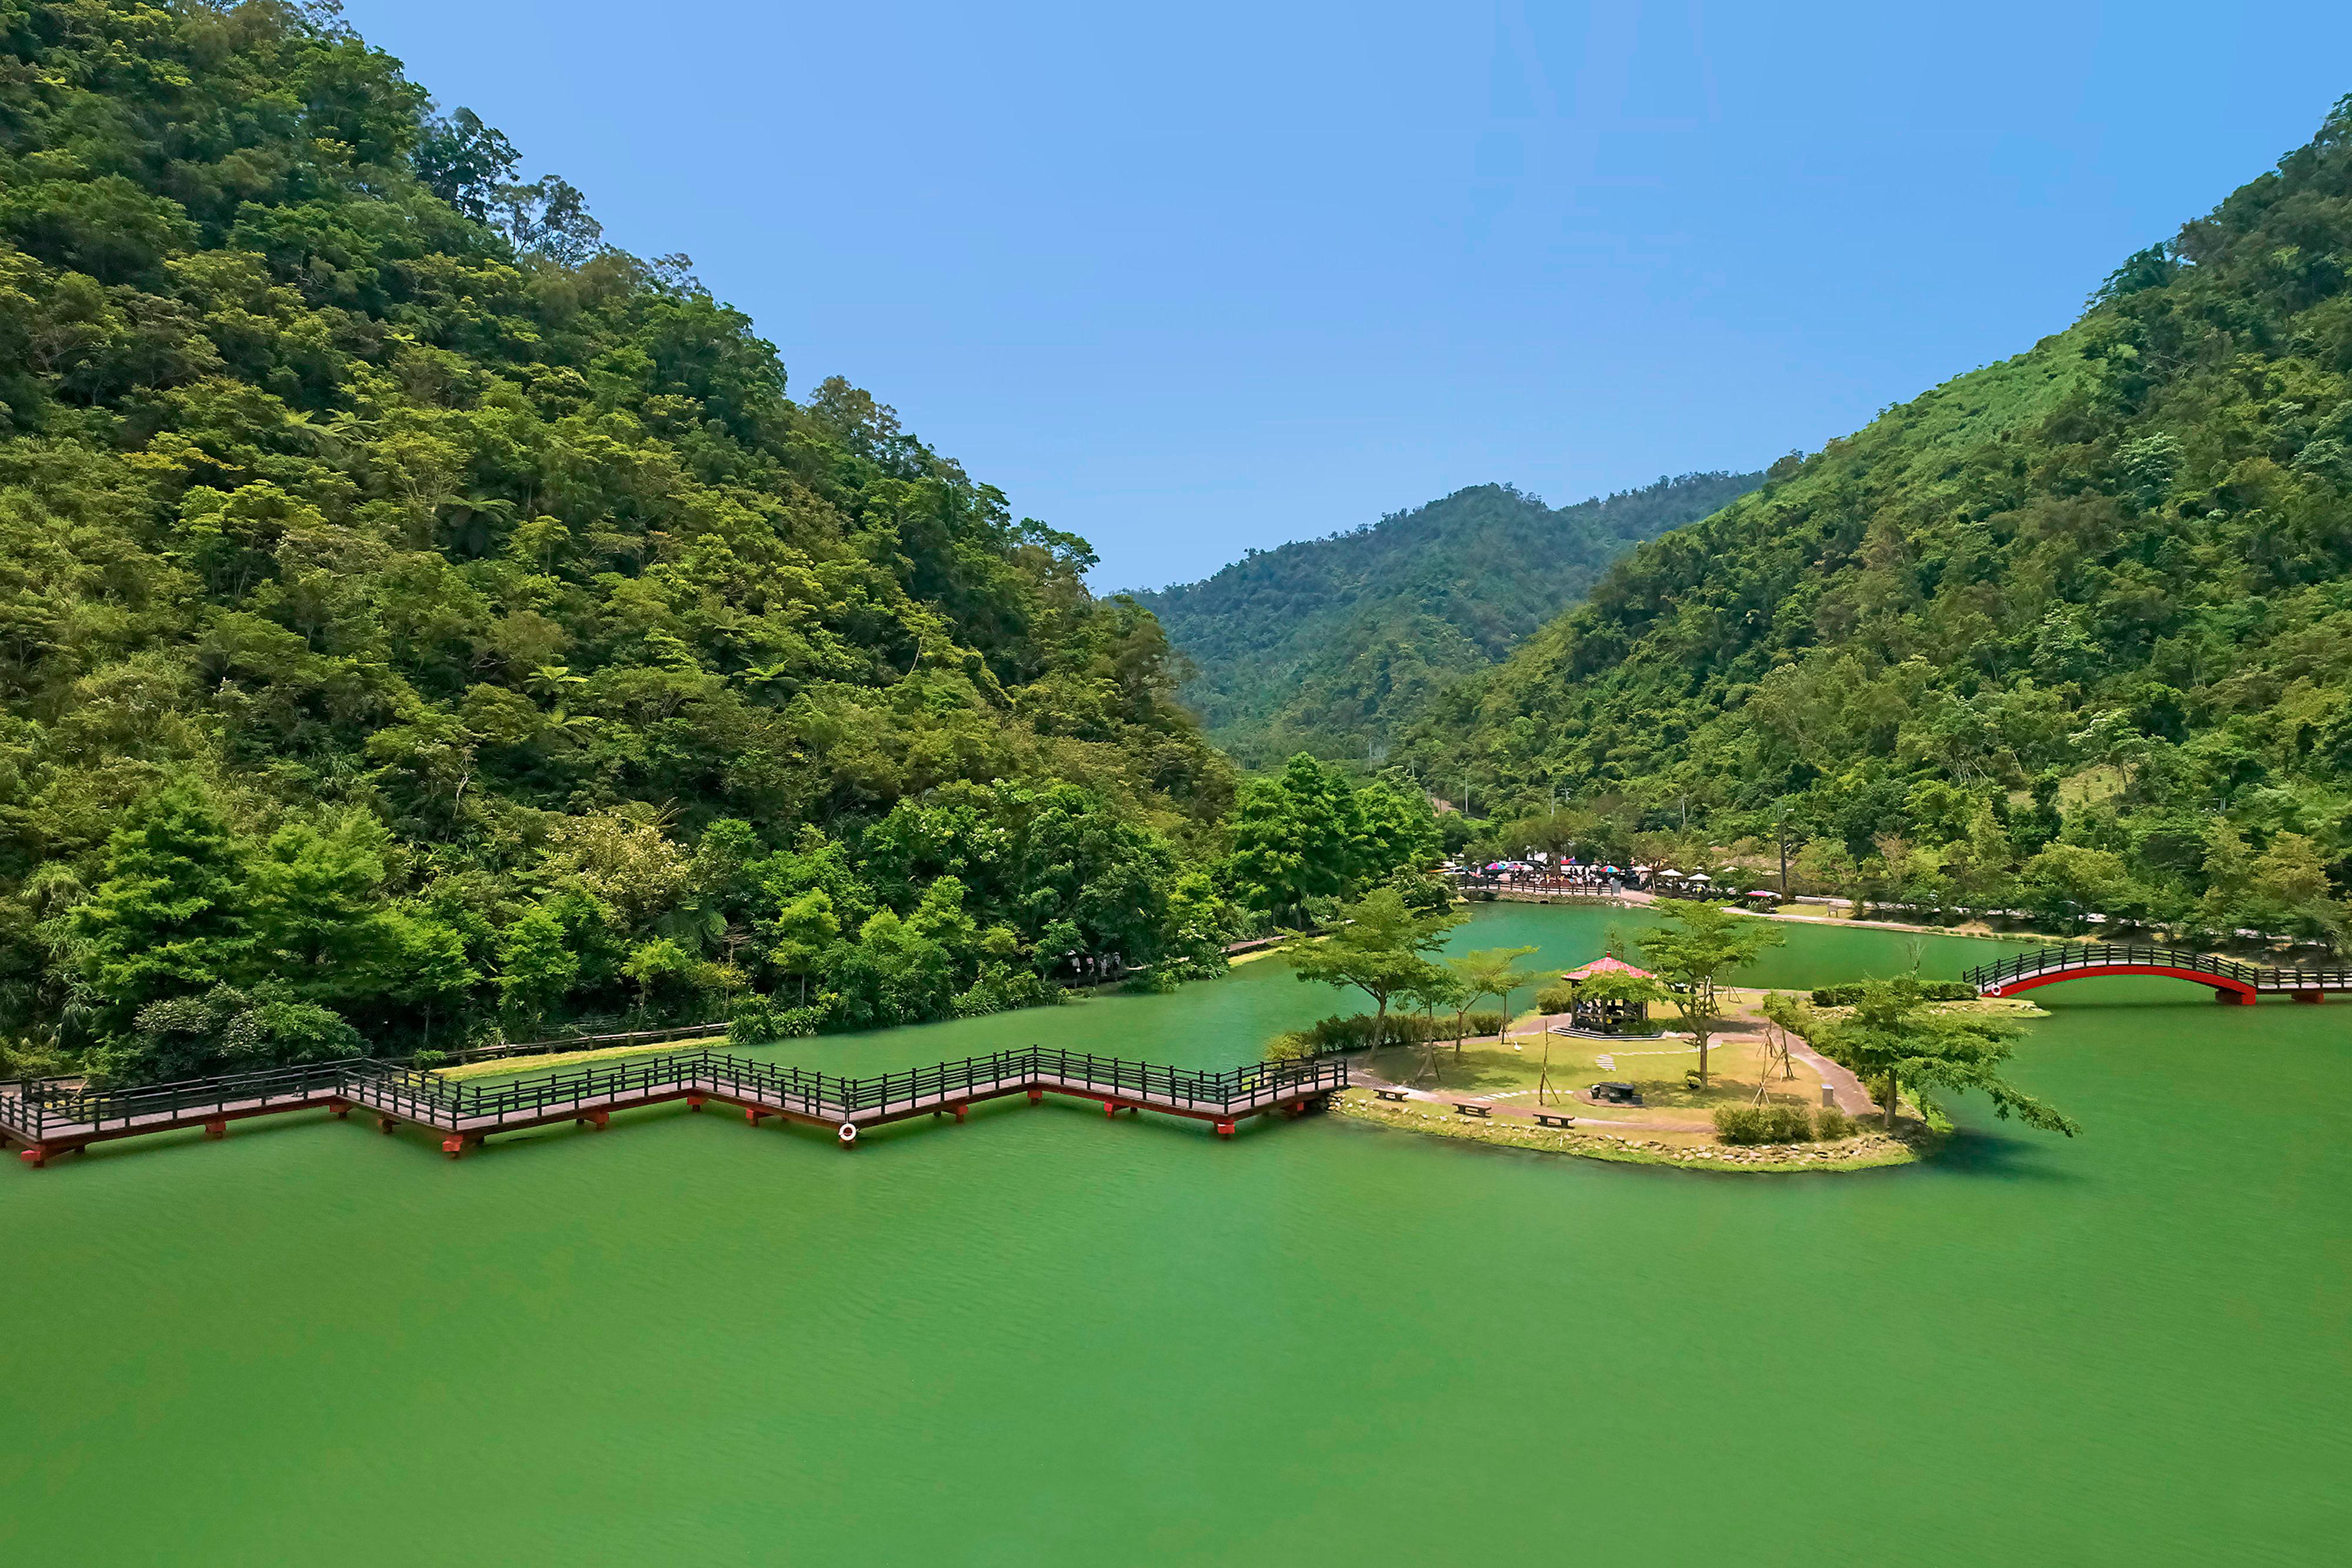 Wang Long Lake